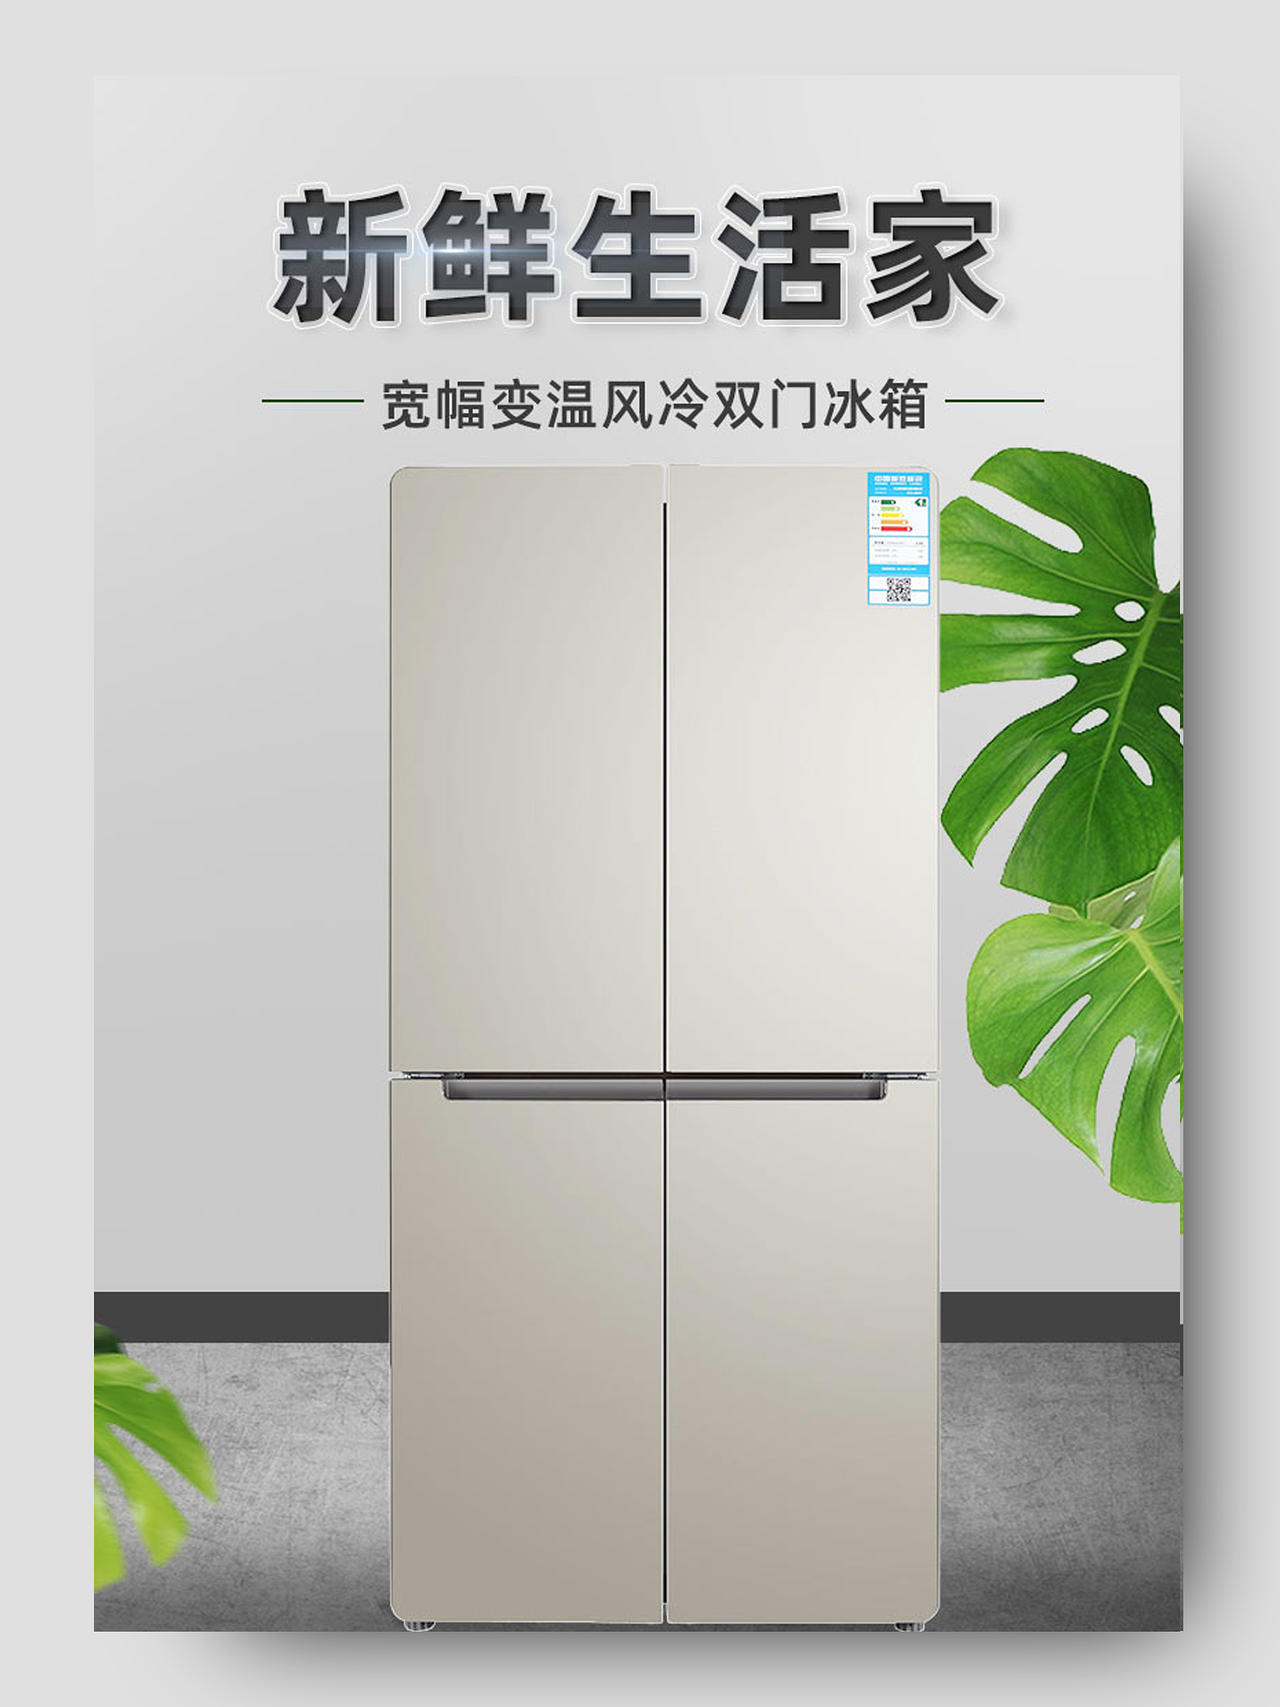 简约大气新鲜生活家电器冰箱详情页